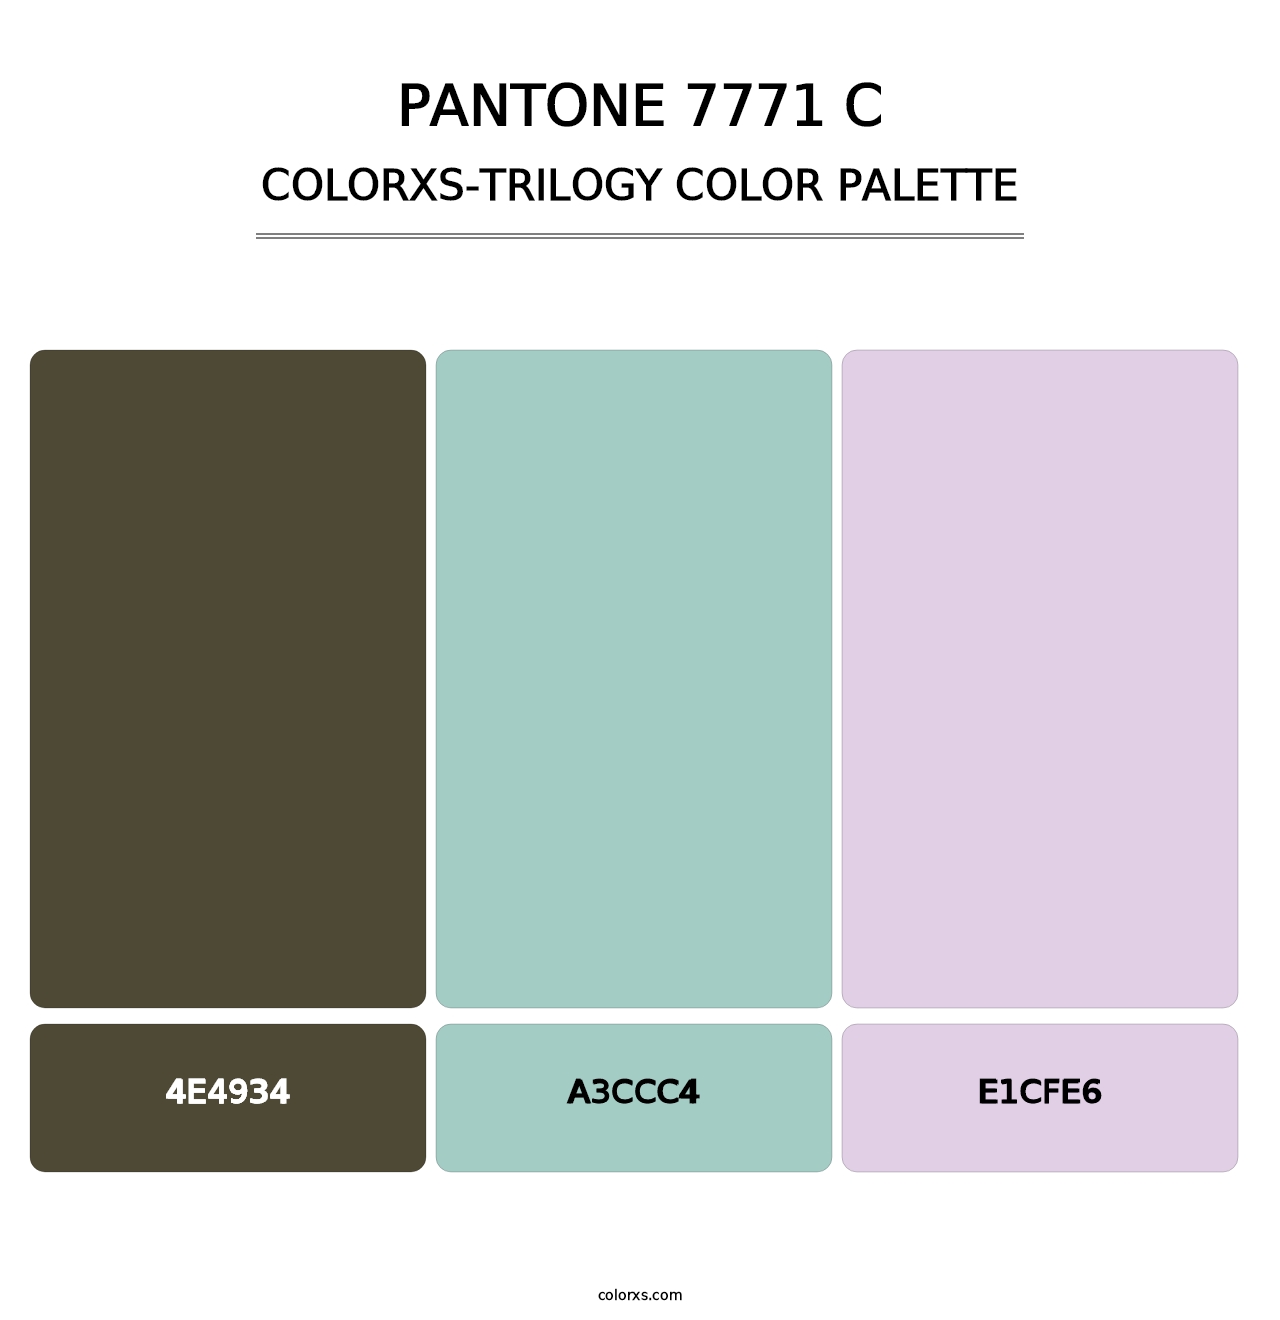 PANTONE 7771 C - Colorxs Trilogy Palette